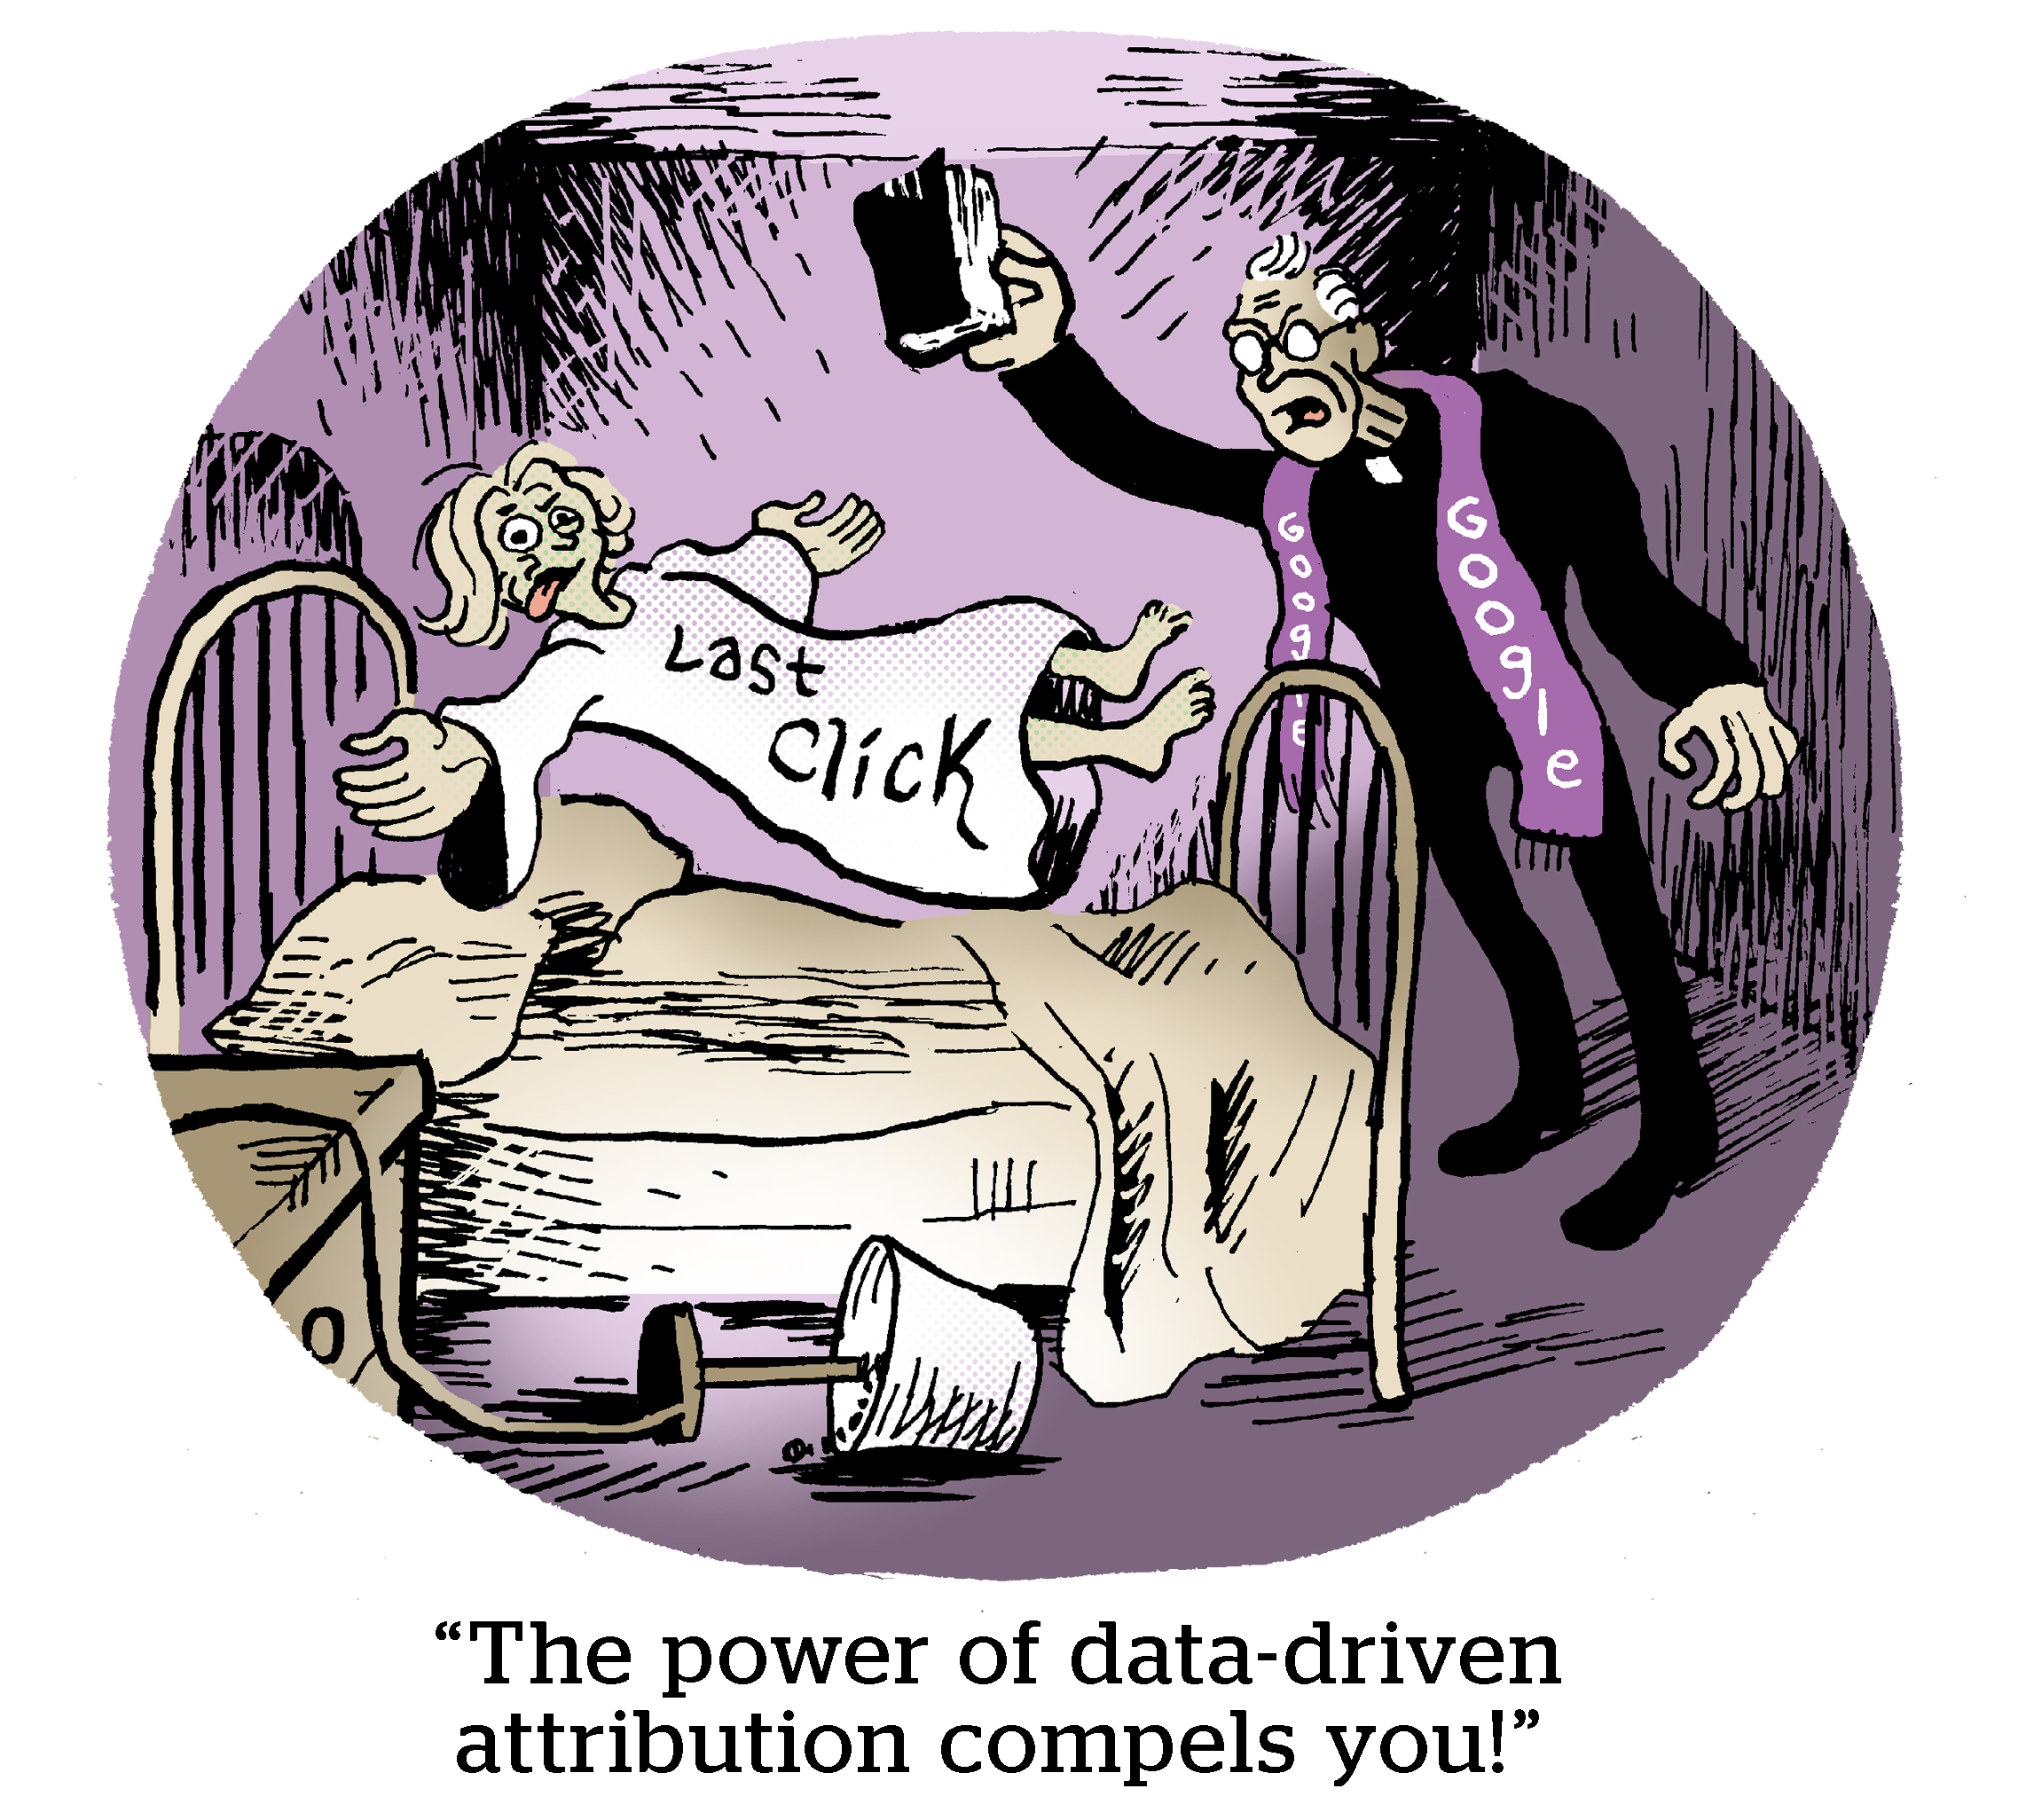 漫画:数据驱动的归因的力量迫使你。”